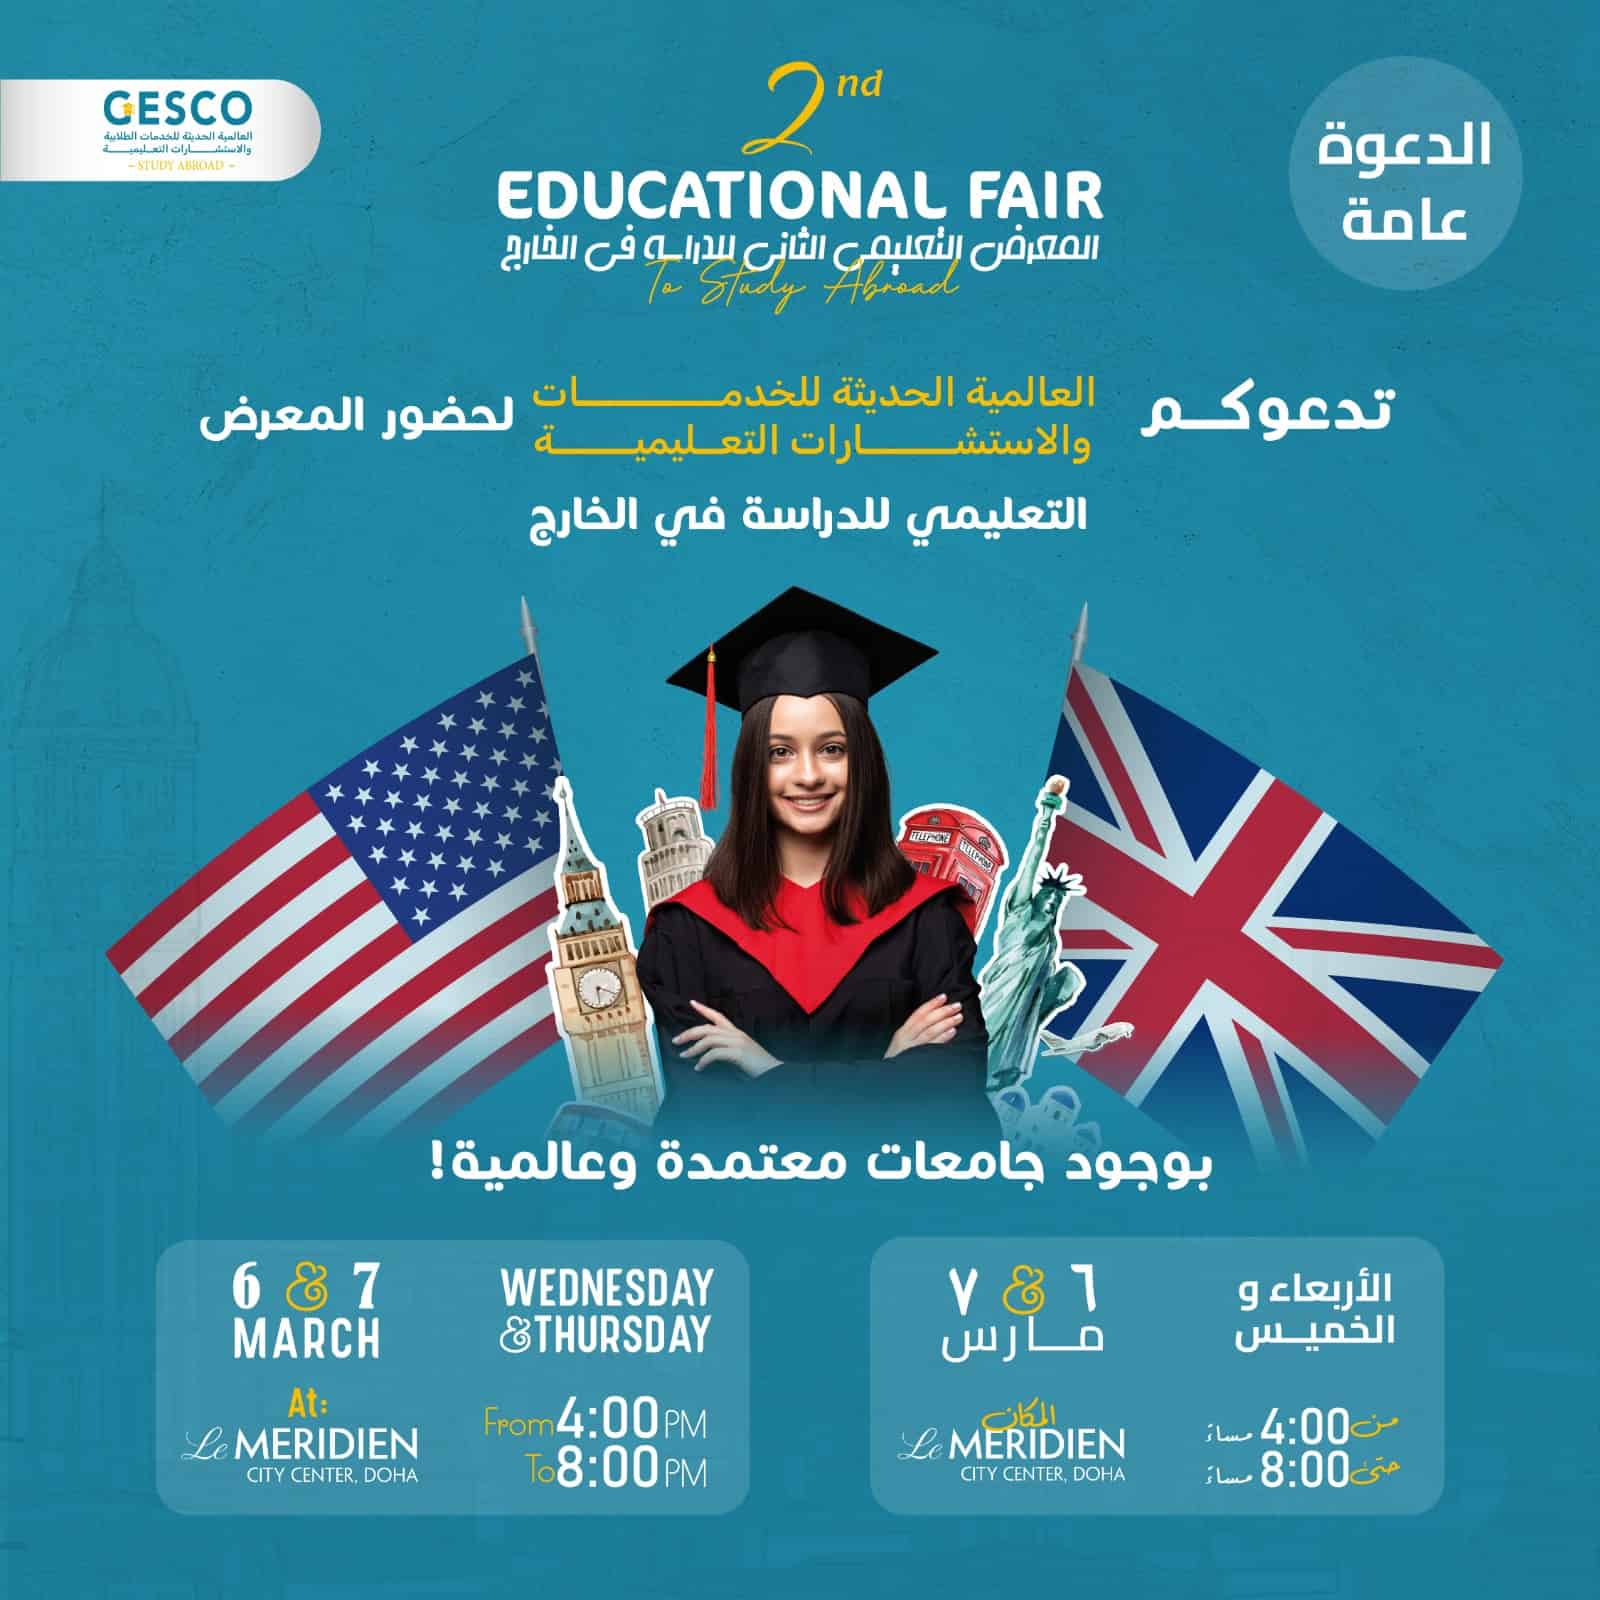 GESCO’s 2nd Educational Fair in Qatar`2